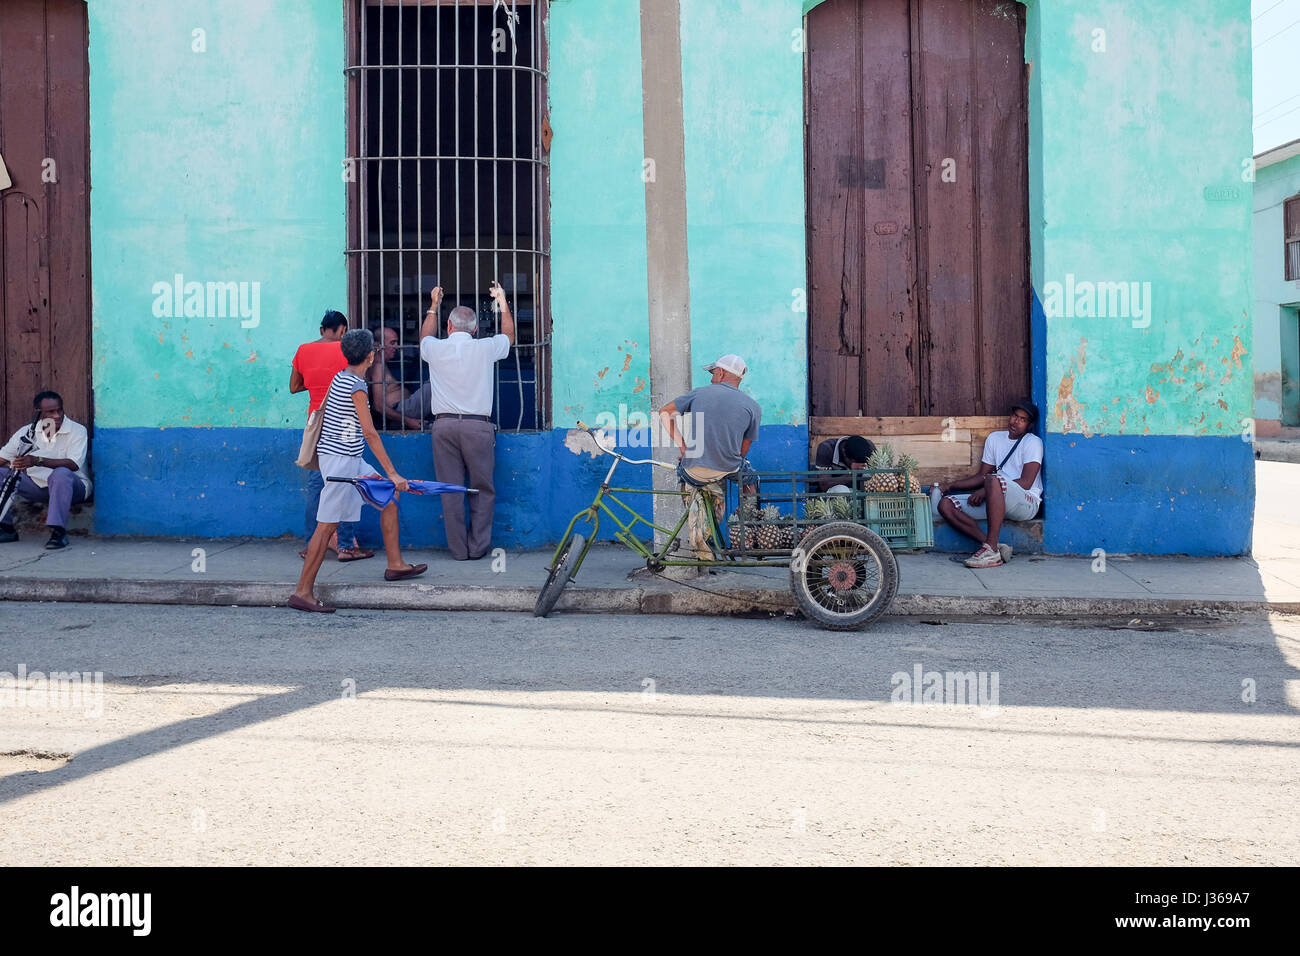 La vida de la calle local en Trinidad, Sancti Spíritus, Cuba. Los cubanos local reunir después del trabajo. Foto de stock